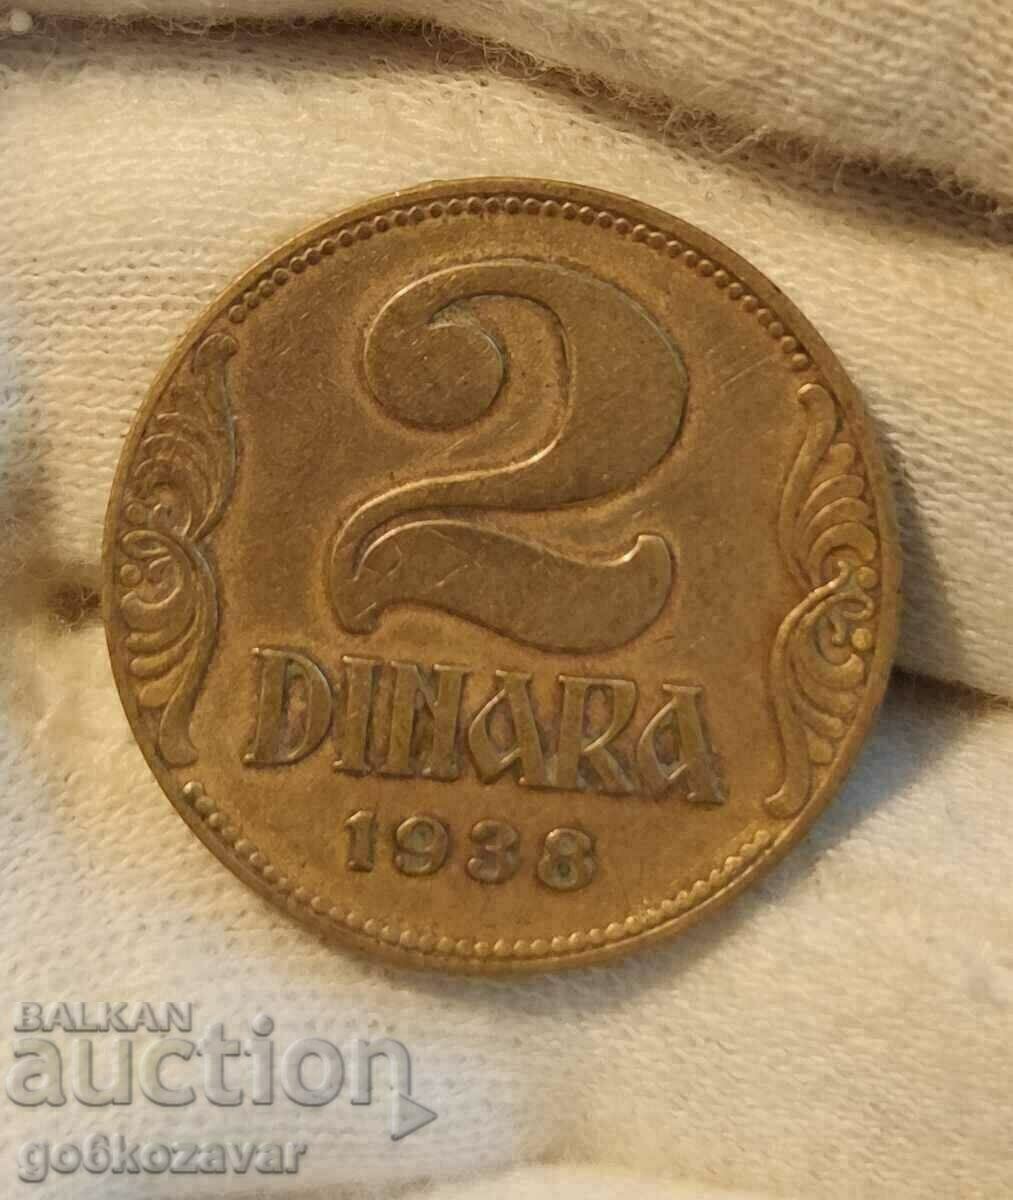 Yugoslavia 2 dinars 1938